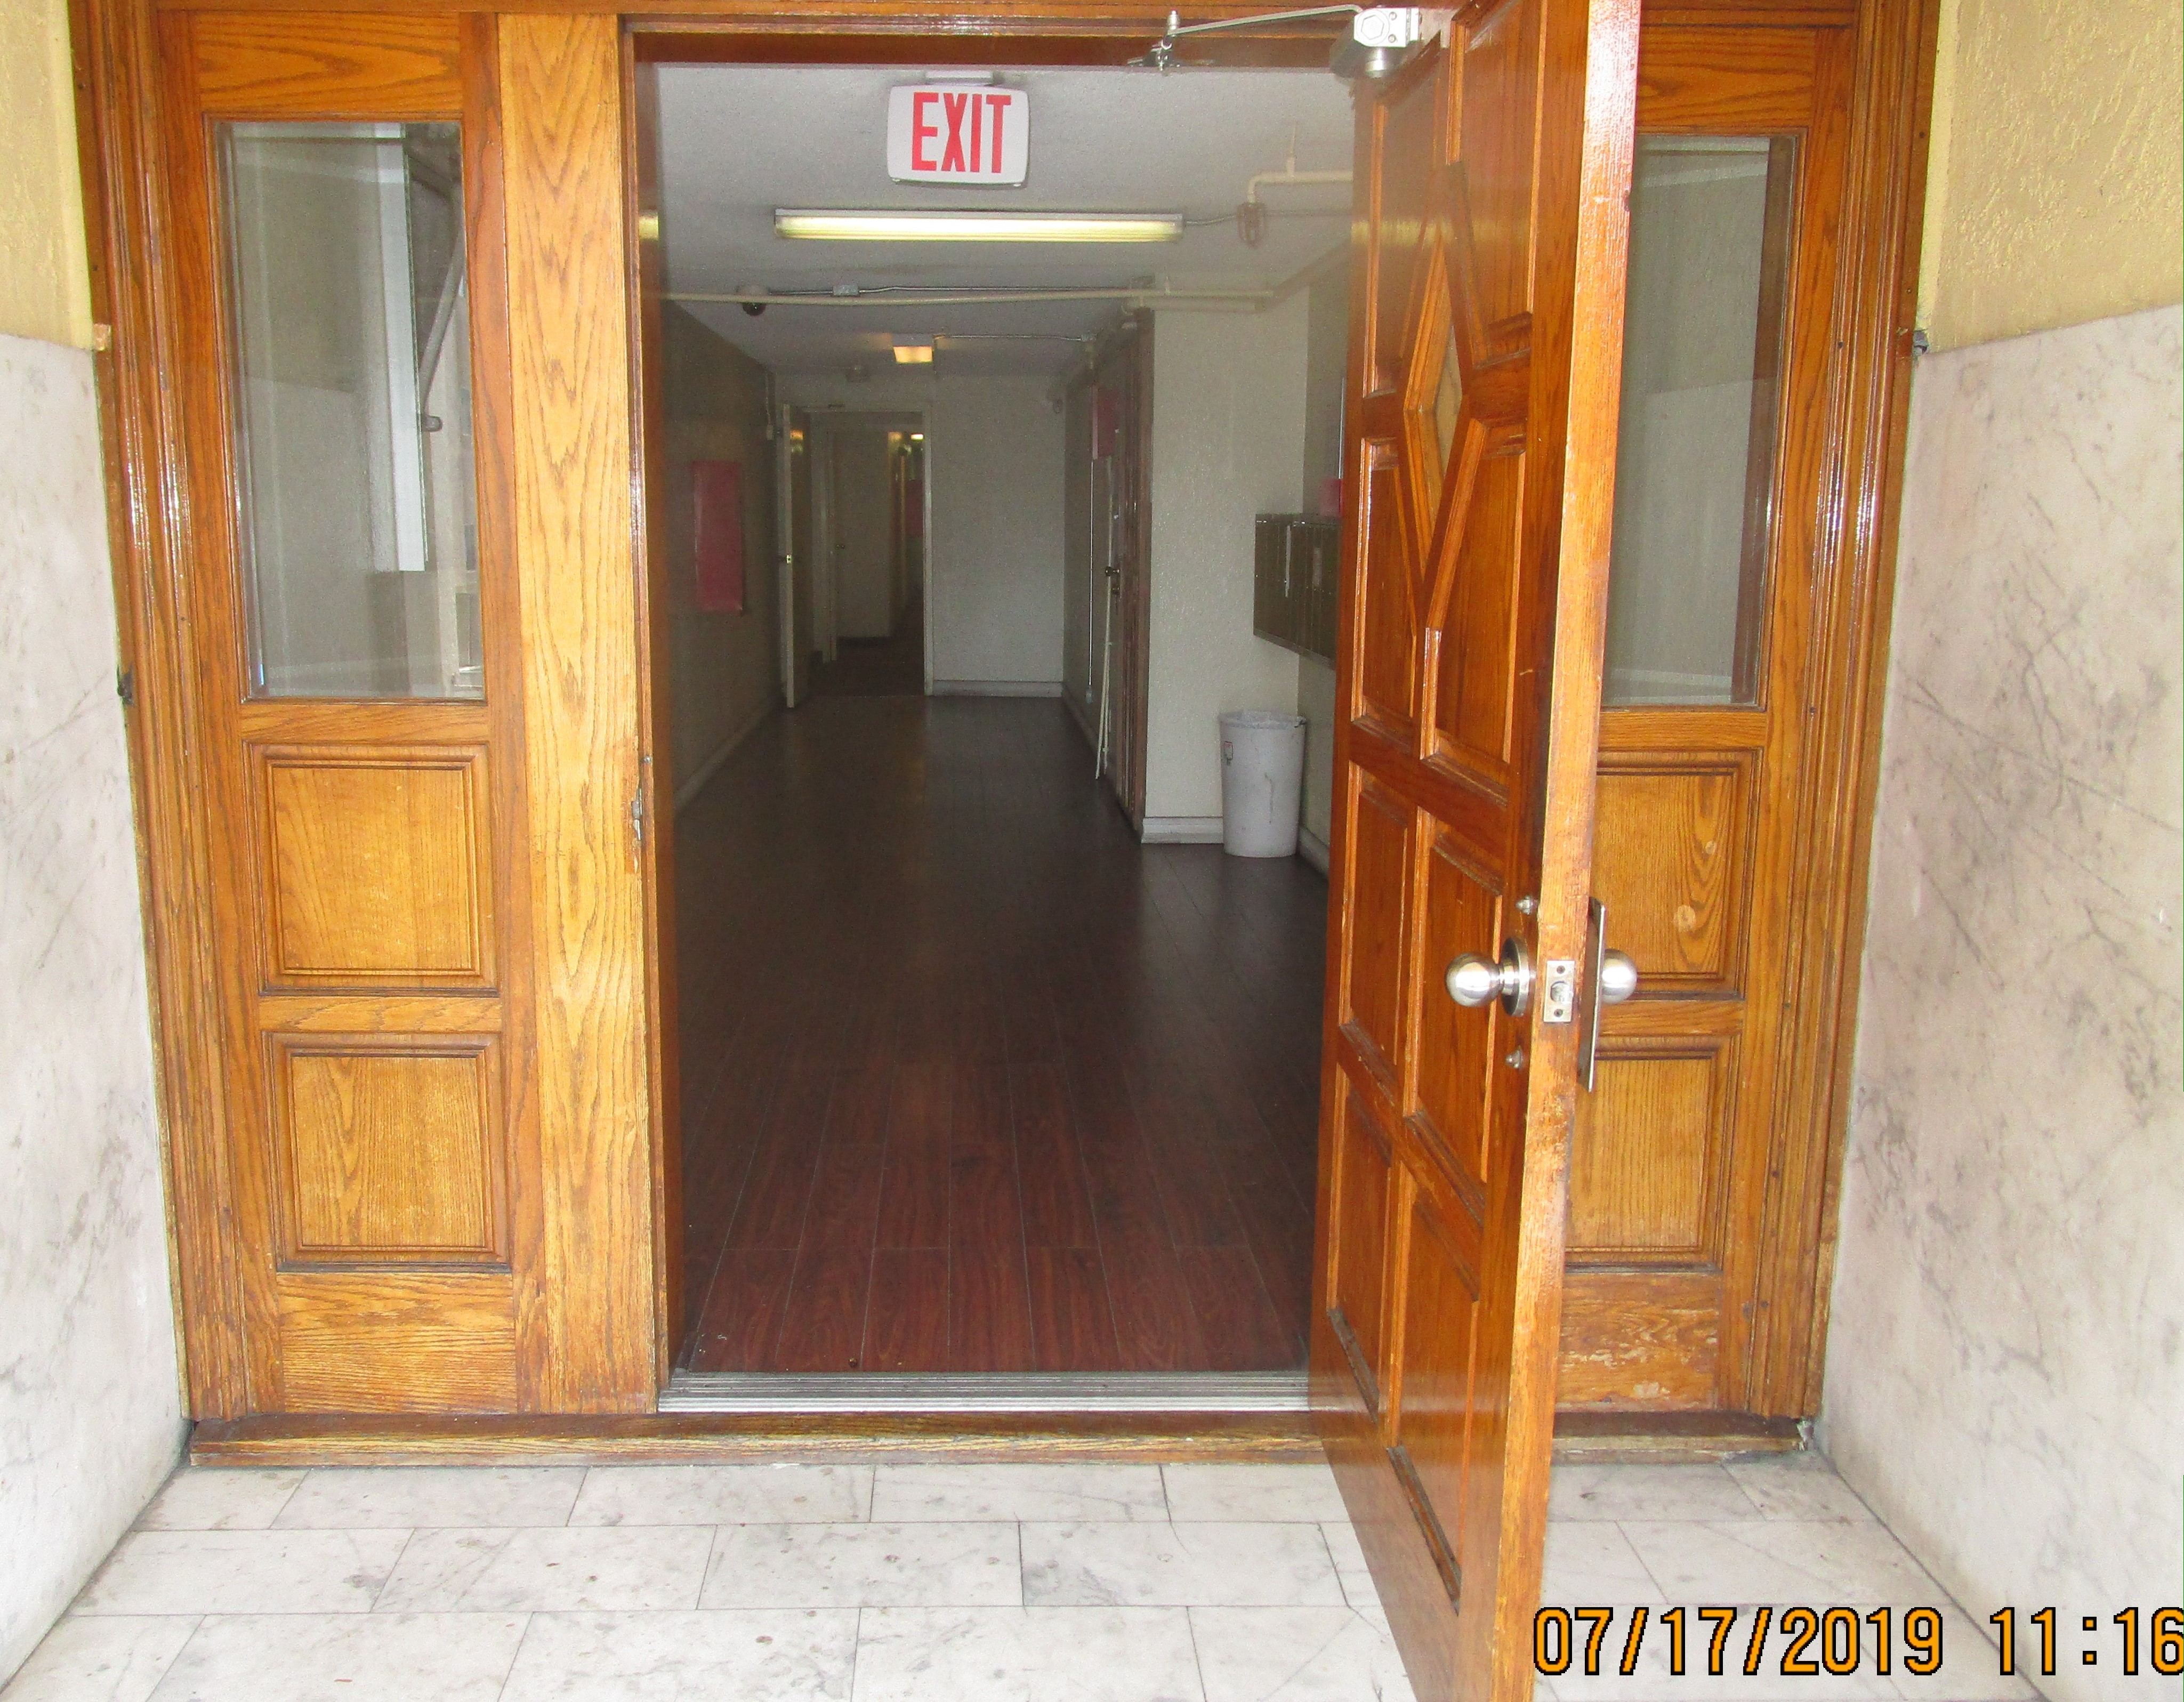 View of an exit, oak wood open door, hallway, brown wood floors.